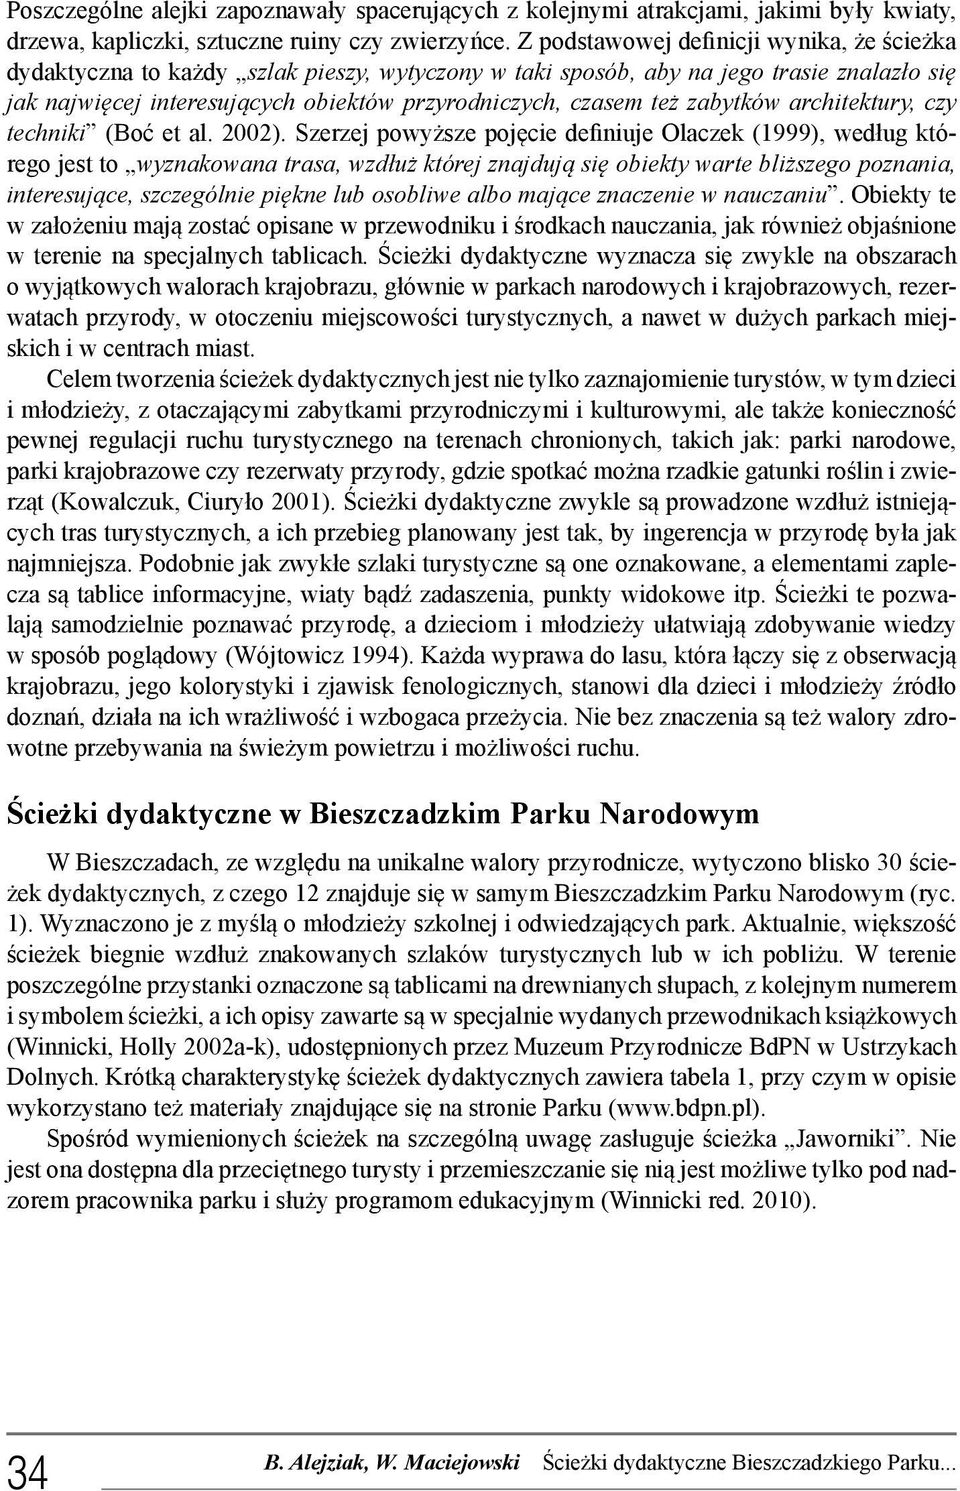 zabytków architektury, czy techniki (Boć et al. 2002).